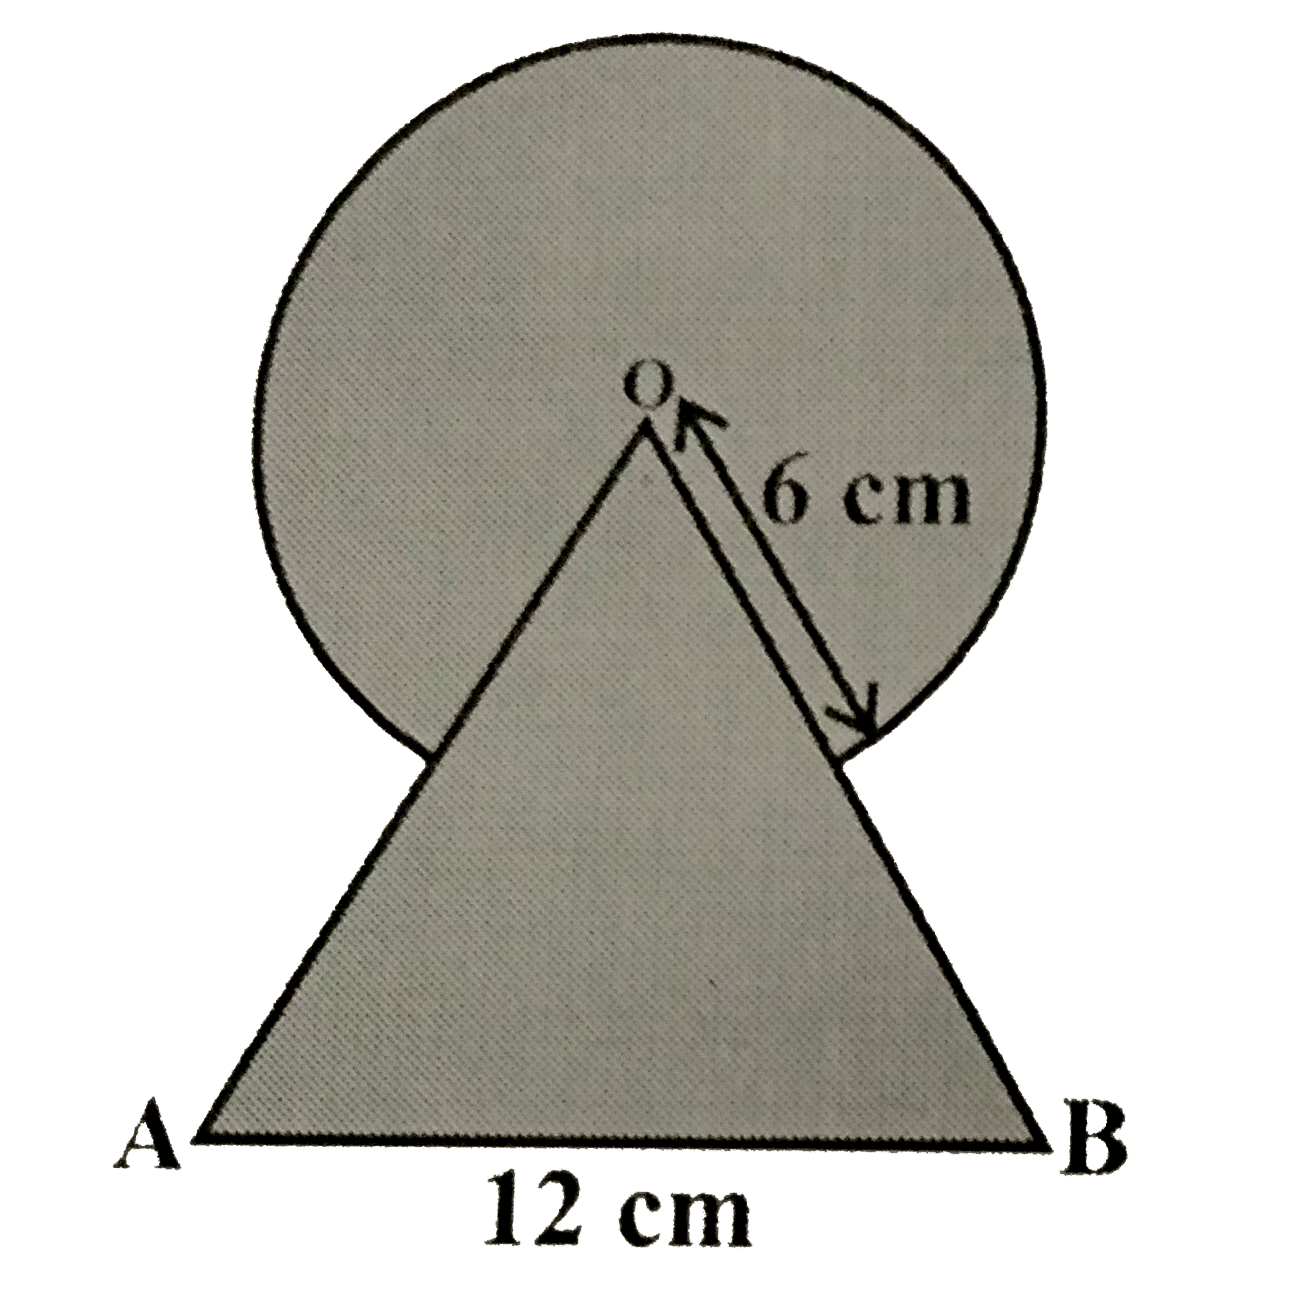 आकृति में छायांकित भाग का क्षेत्रफल ज्ञात कीजिए जहां भुजा 12 सेमी वाले एक समबाहु त्रिभुज OAB के शीर्ष O को केंद्र मान कर 6 सेमी त्रिज्‍या वाला एक वृत्तीय चाप खींचा गया है।